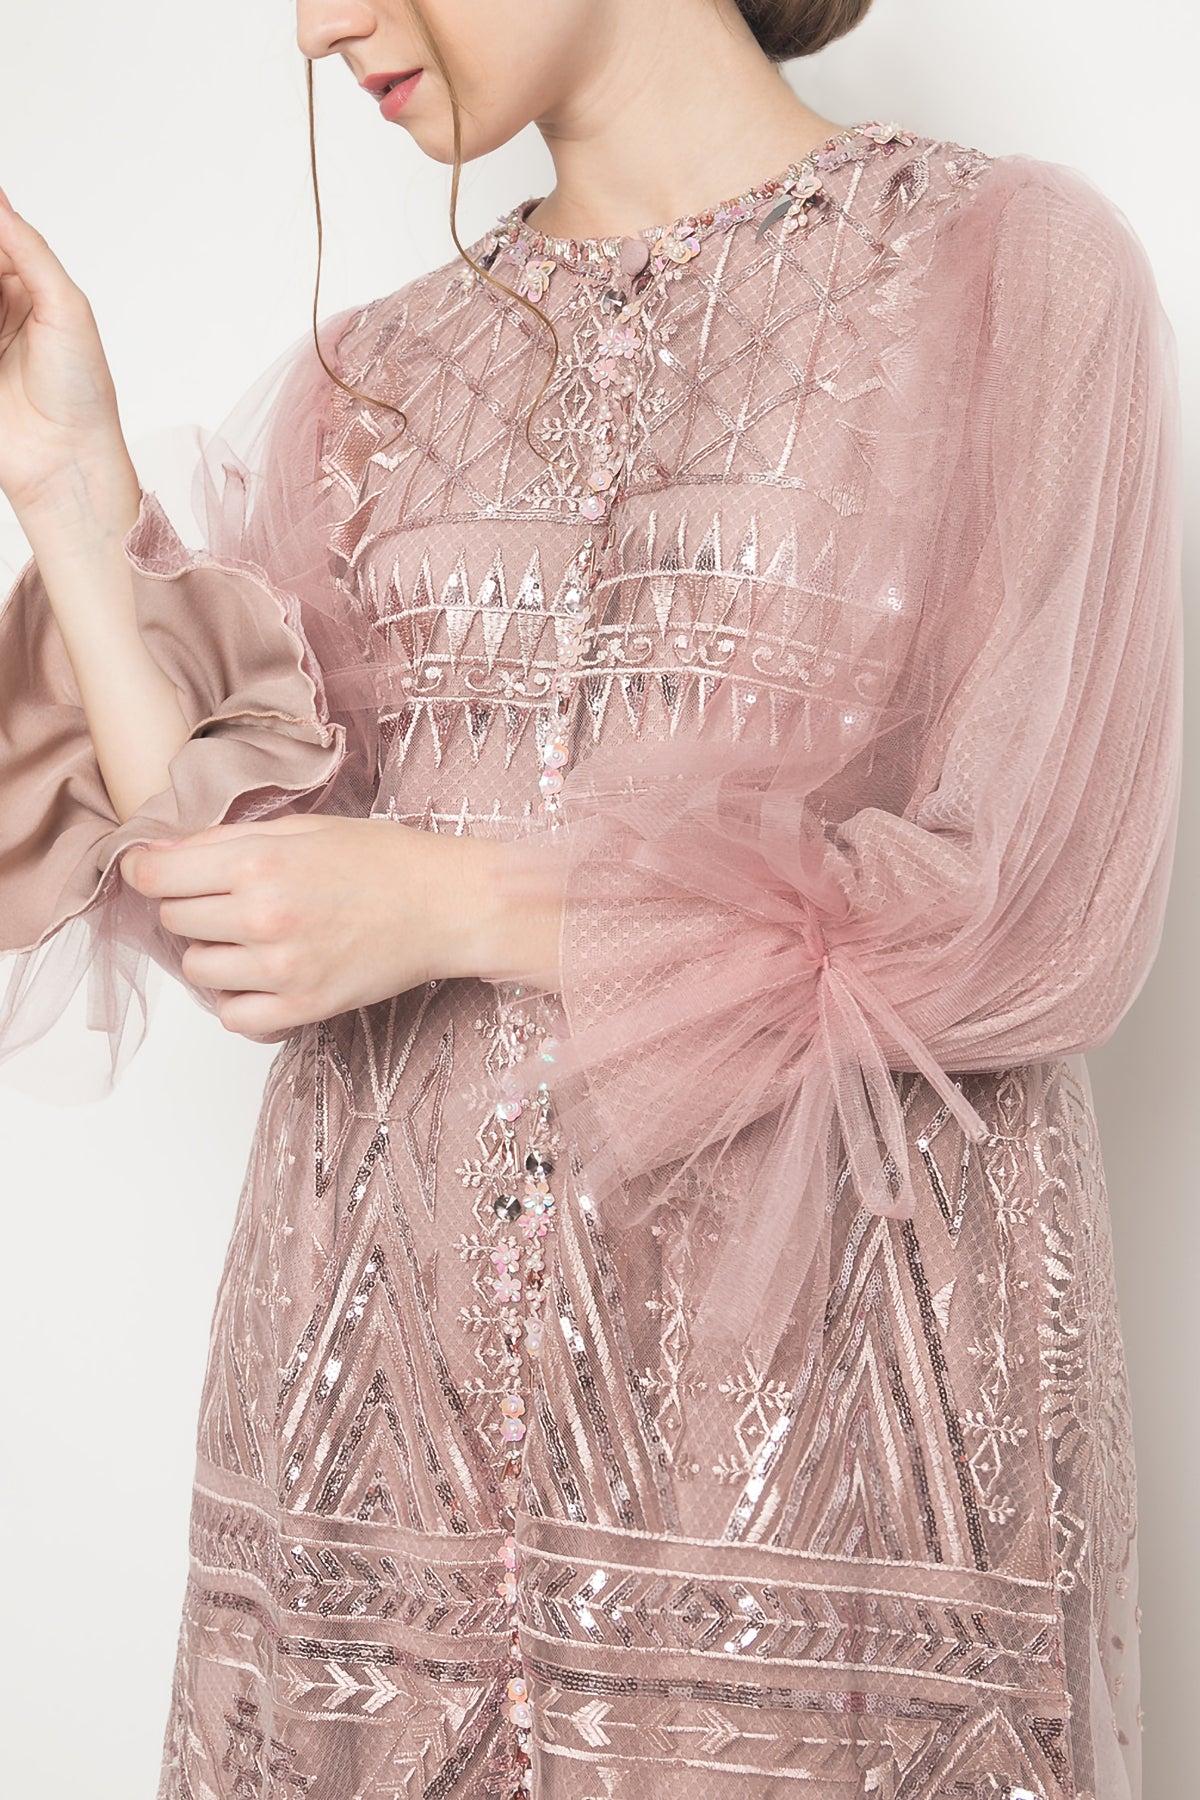 Azalia Dress in Dusty Pink